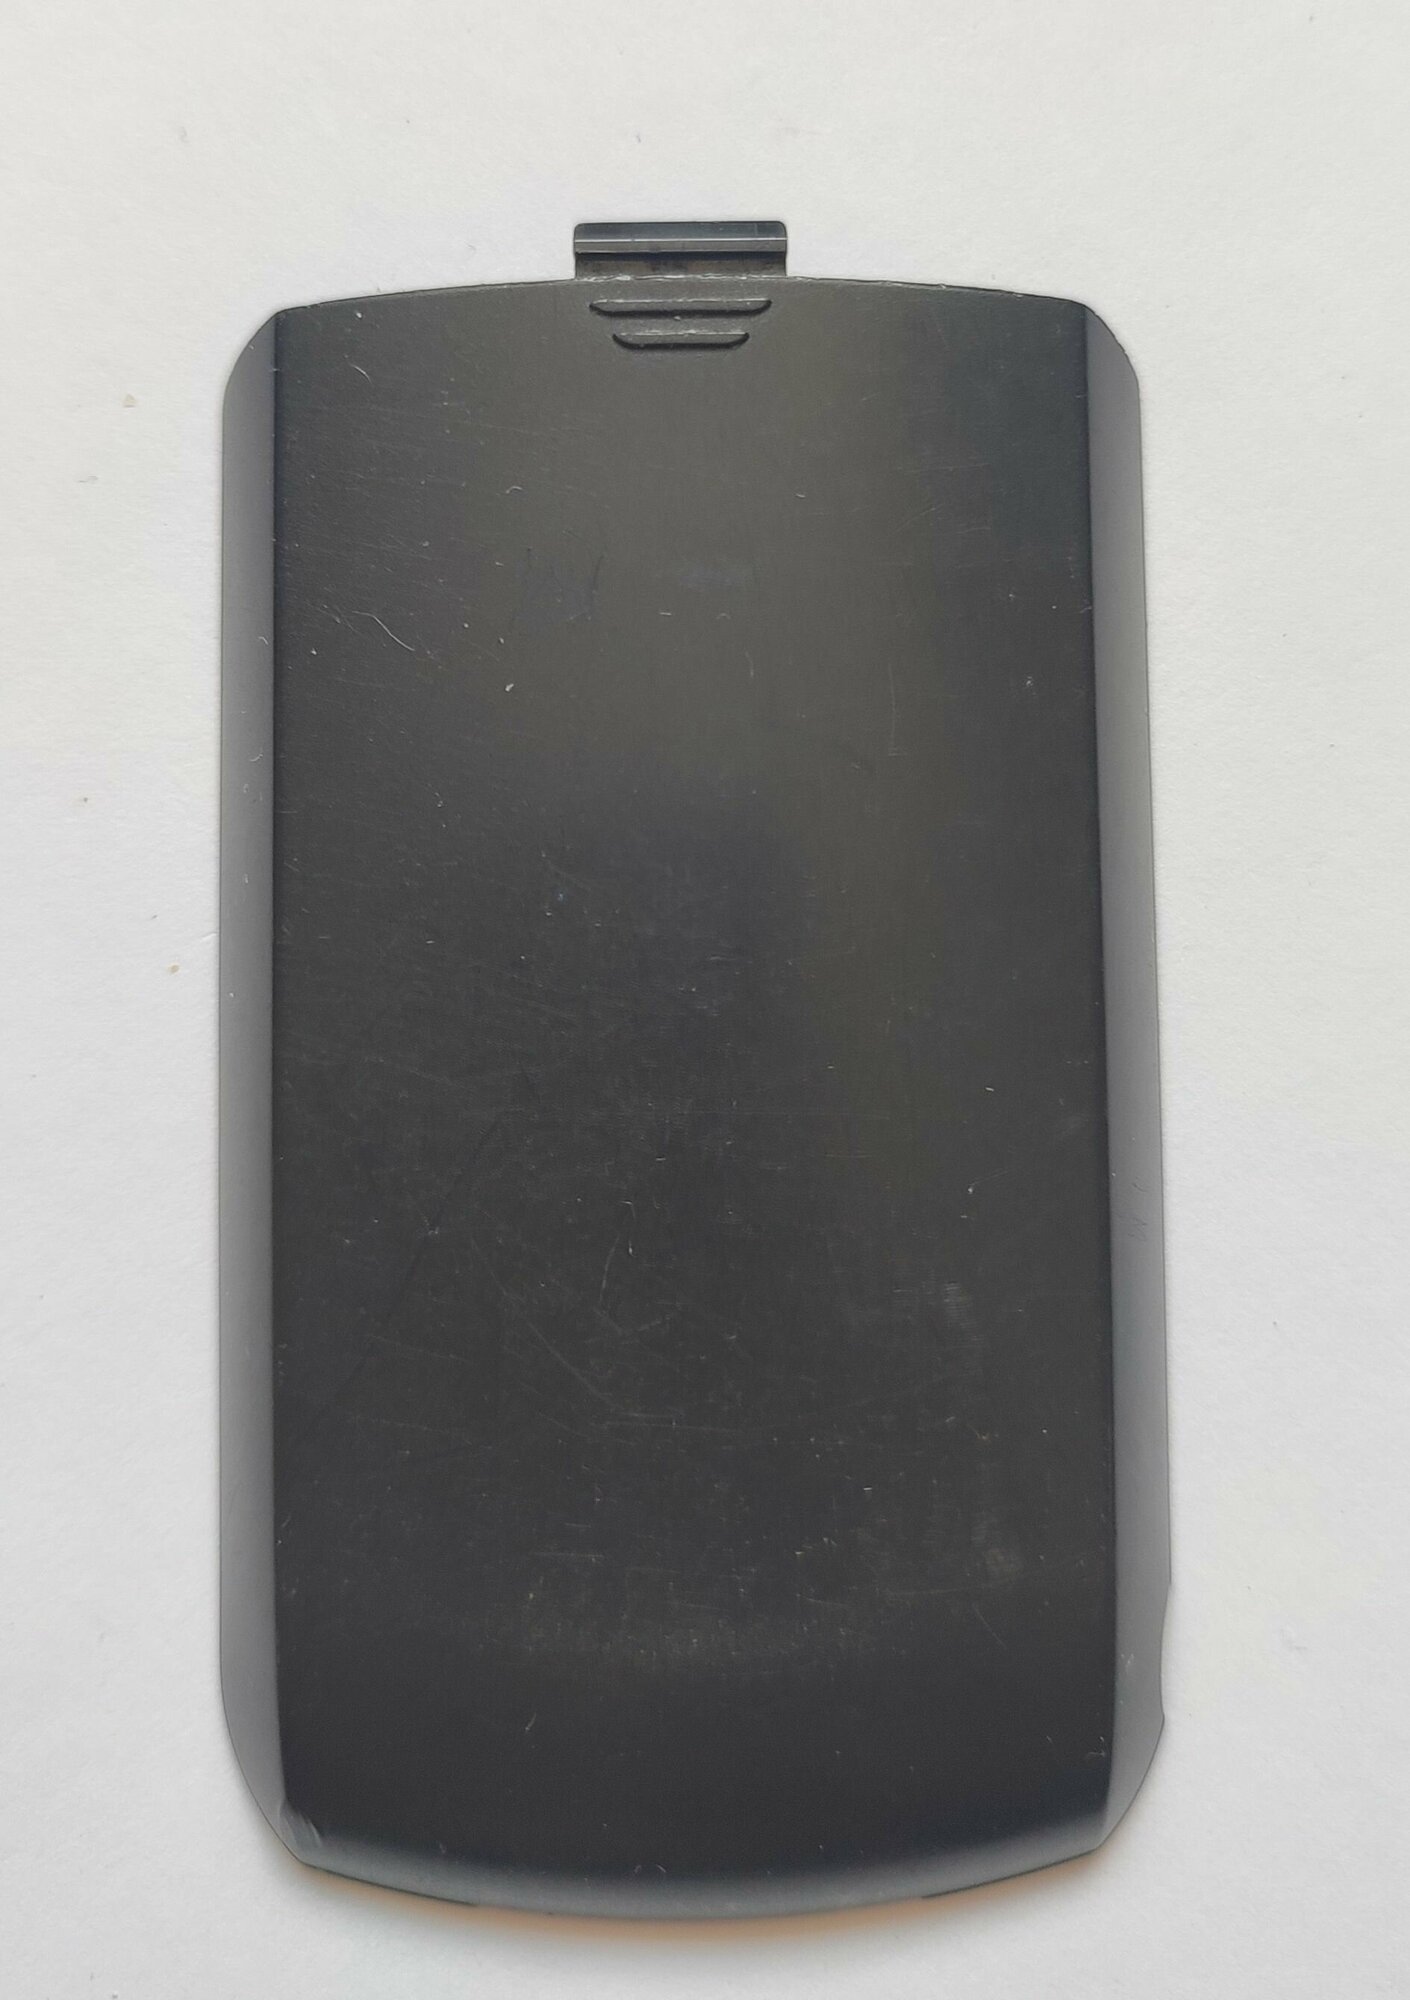 Задняя крышка корпуса панель аккумулятора Motorola c113 риг. бу